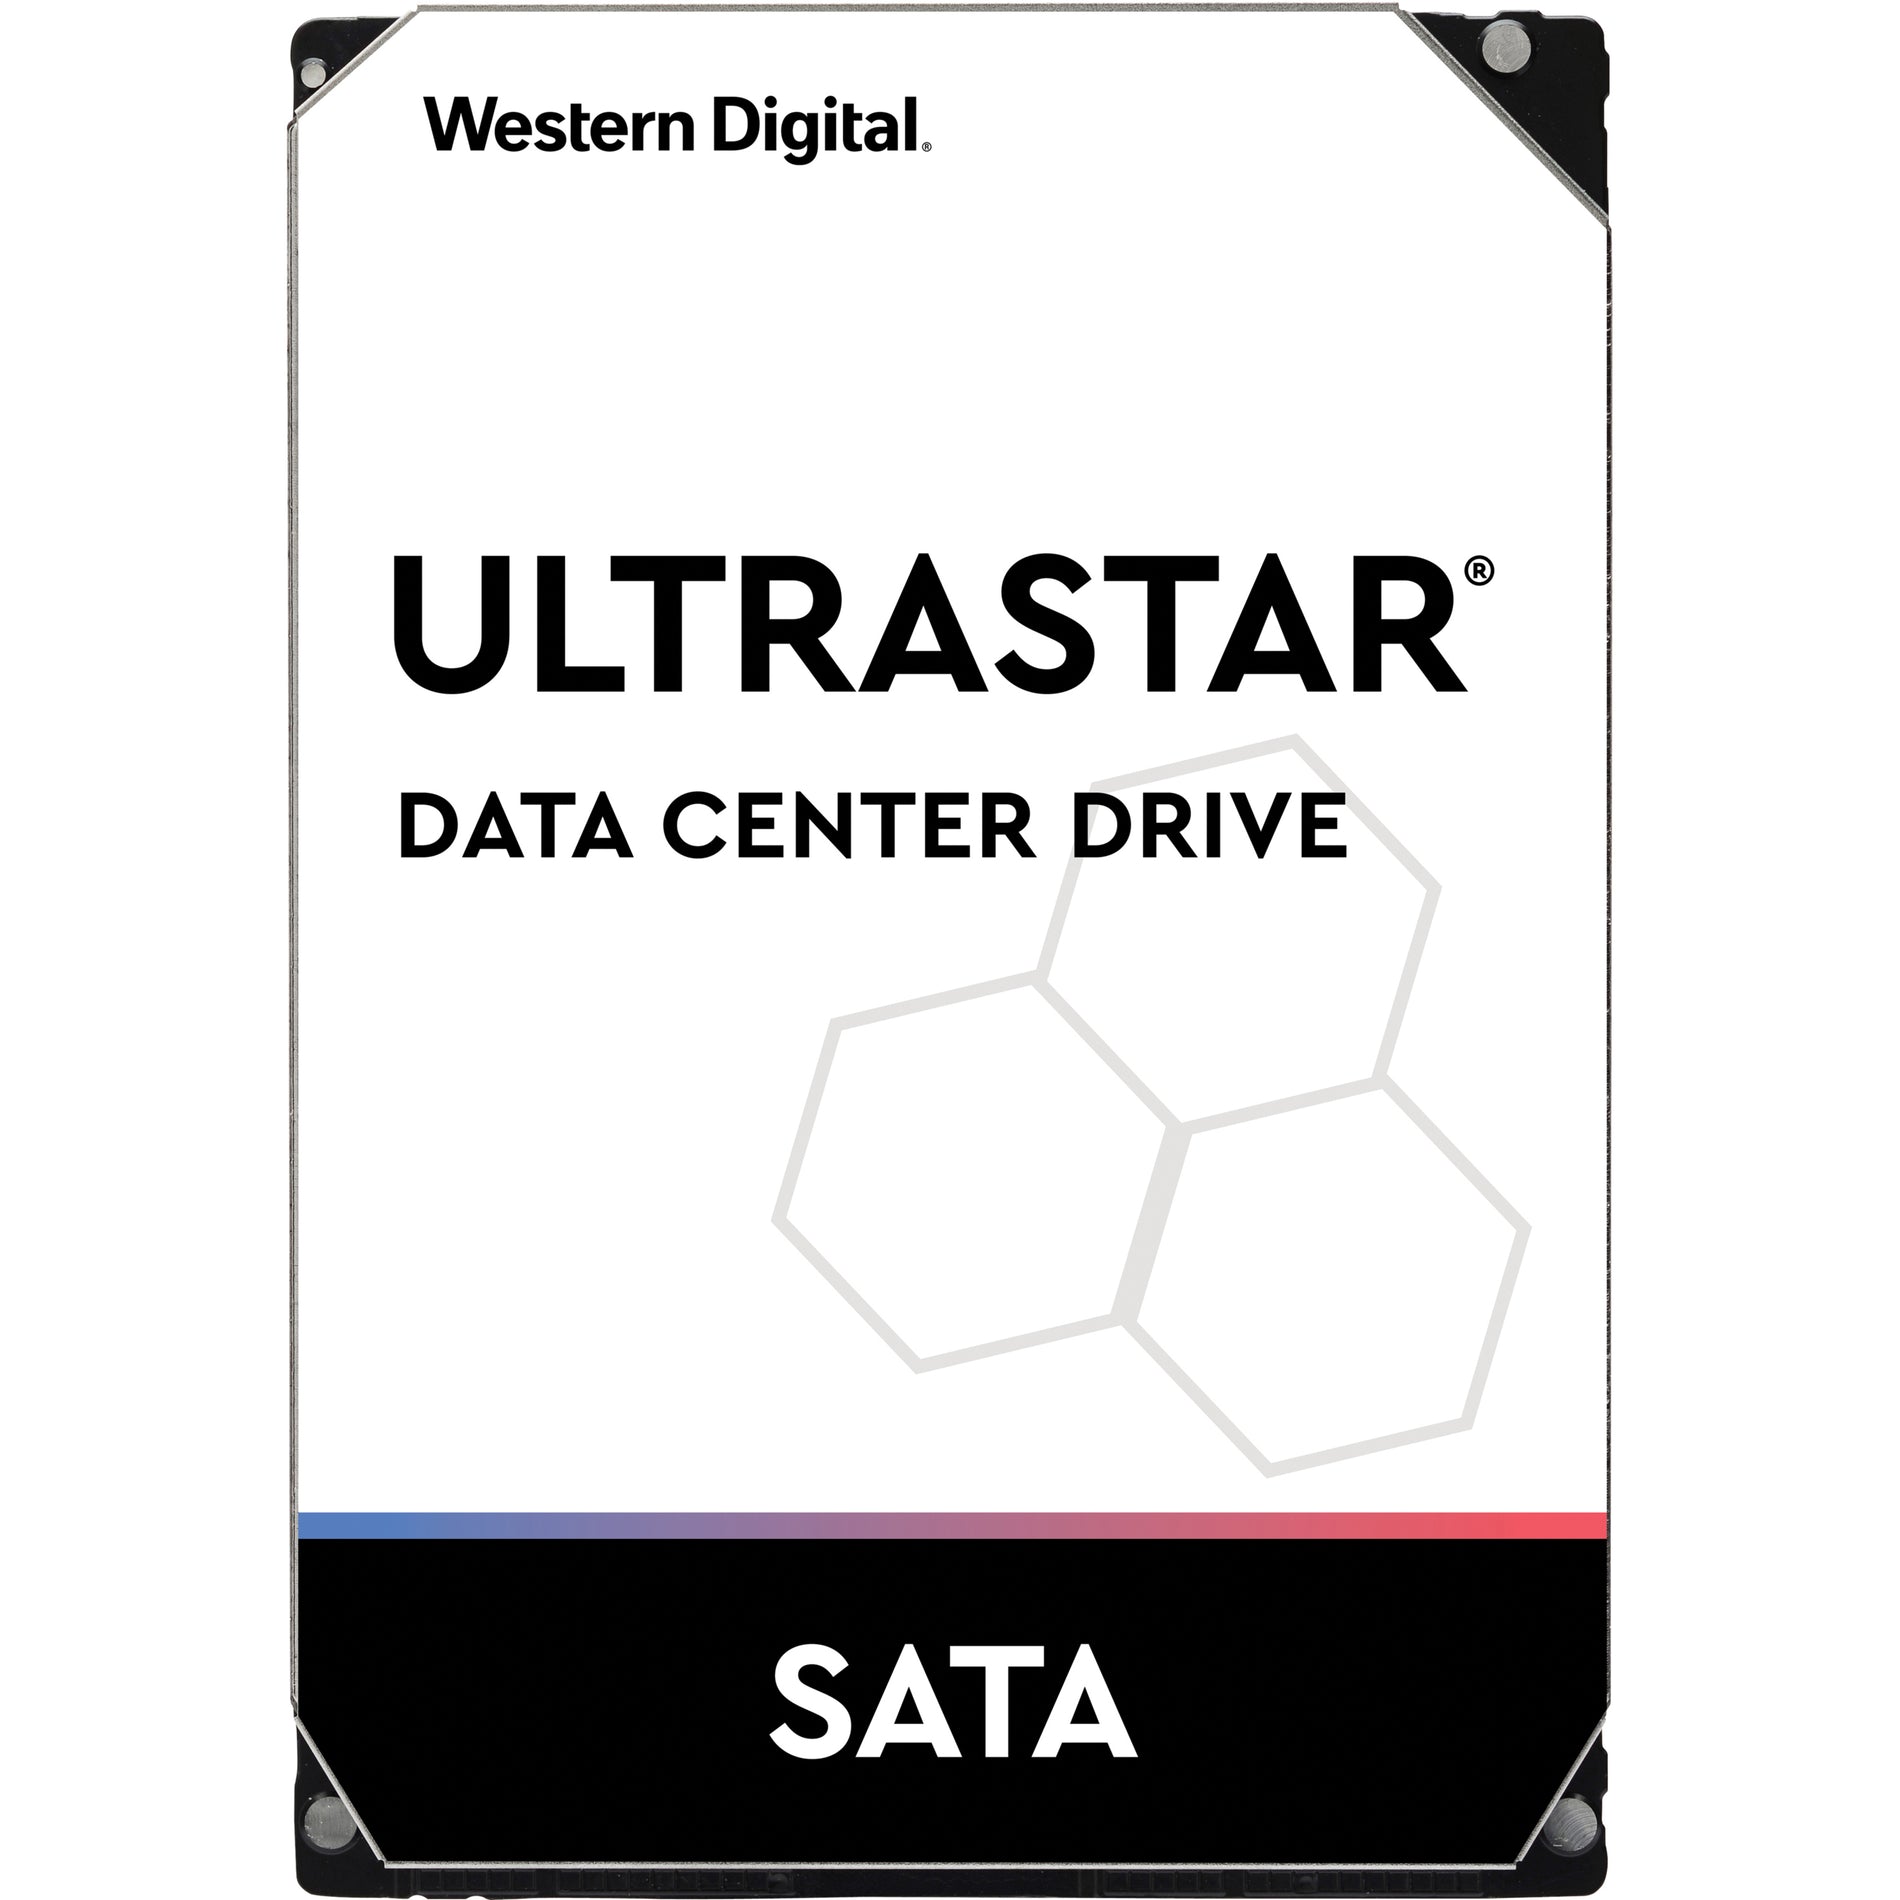 Western Digital 1W10002 2TB Ultrastar DC HA200 SATA HDD, 7200RPM, 128MB Buffer, 5 Year Warranty